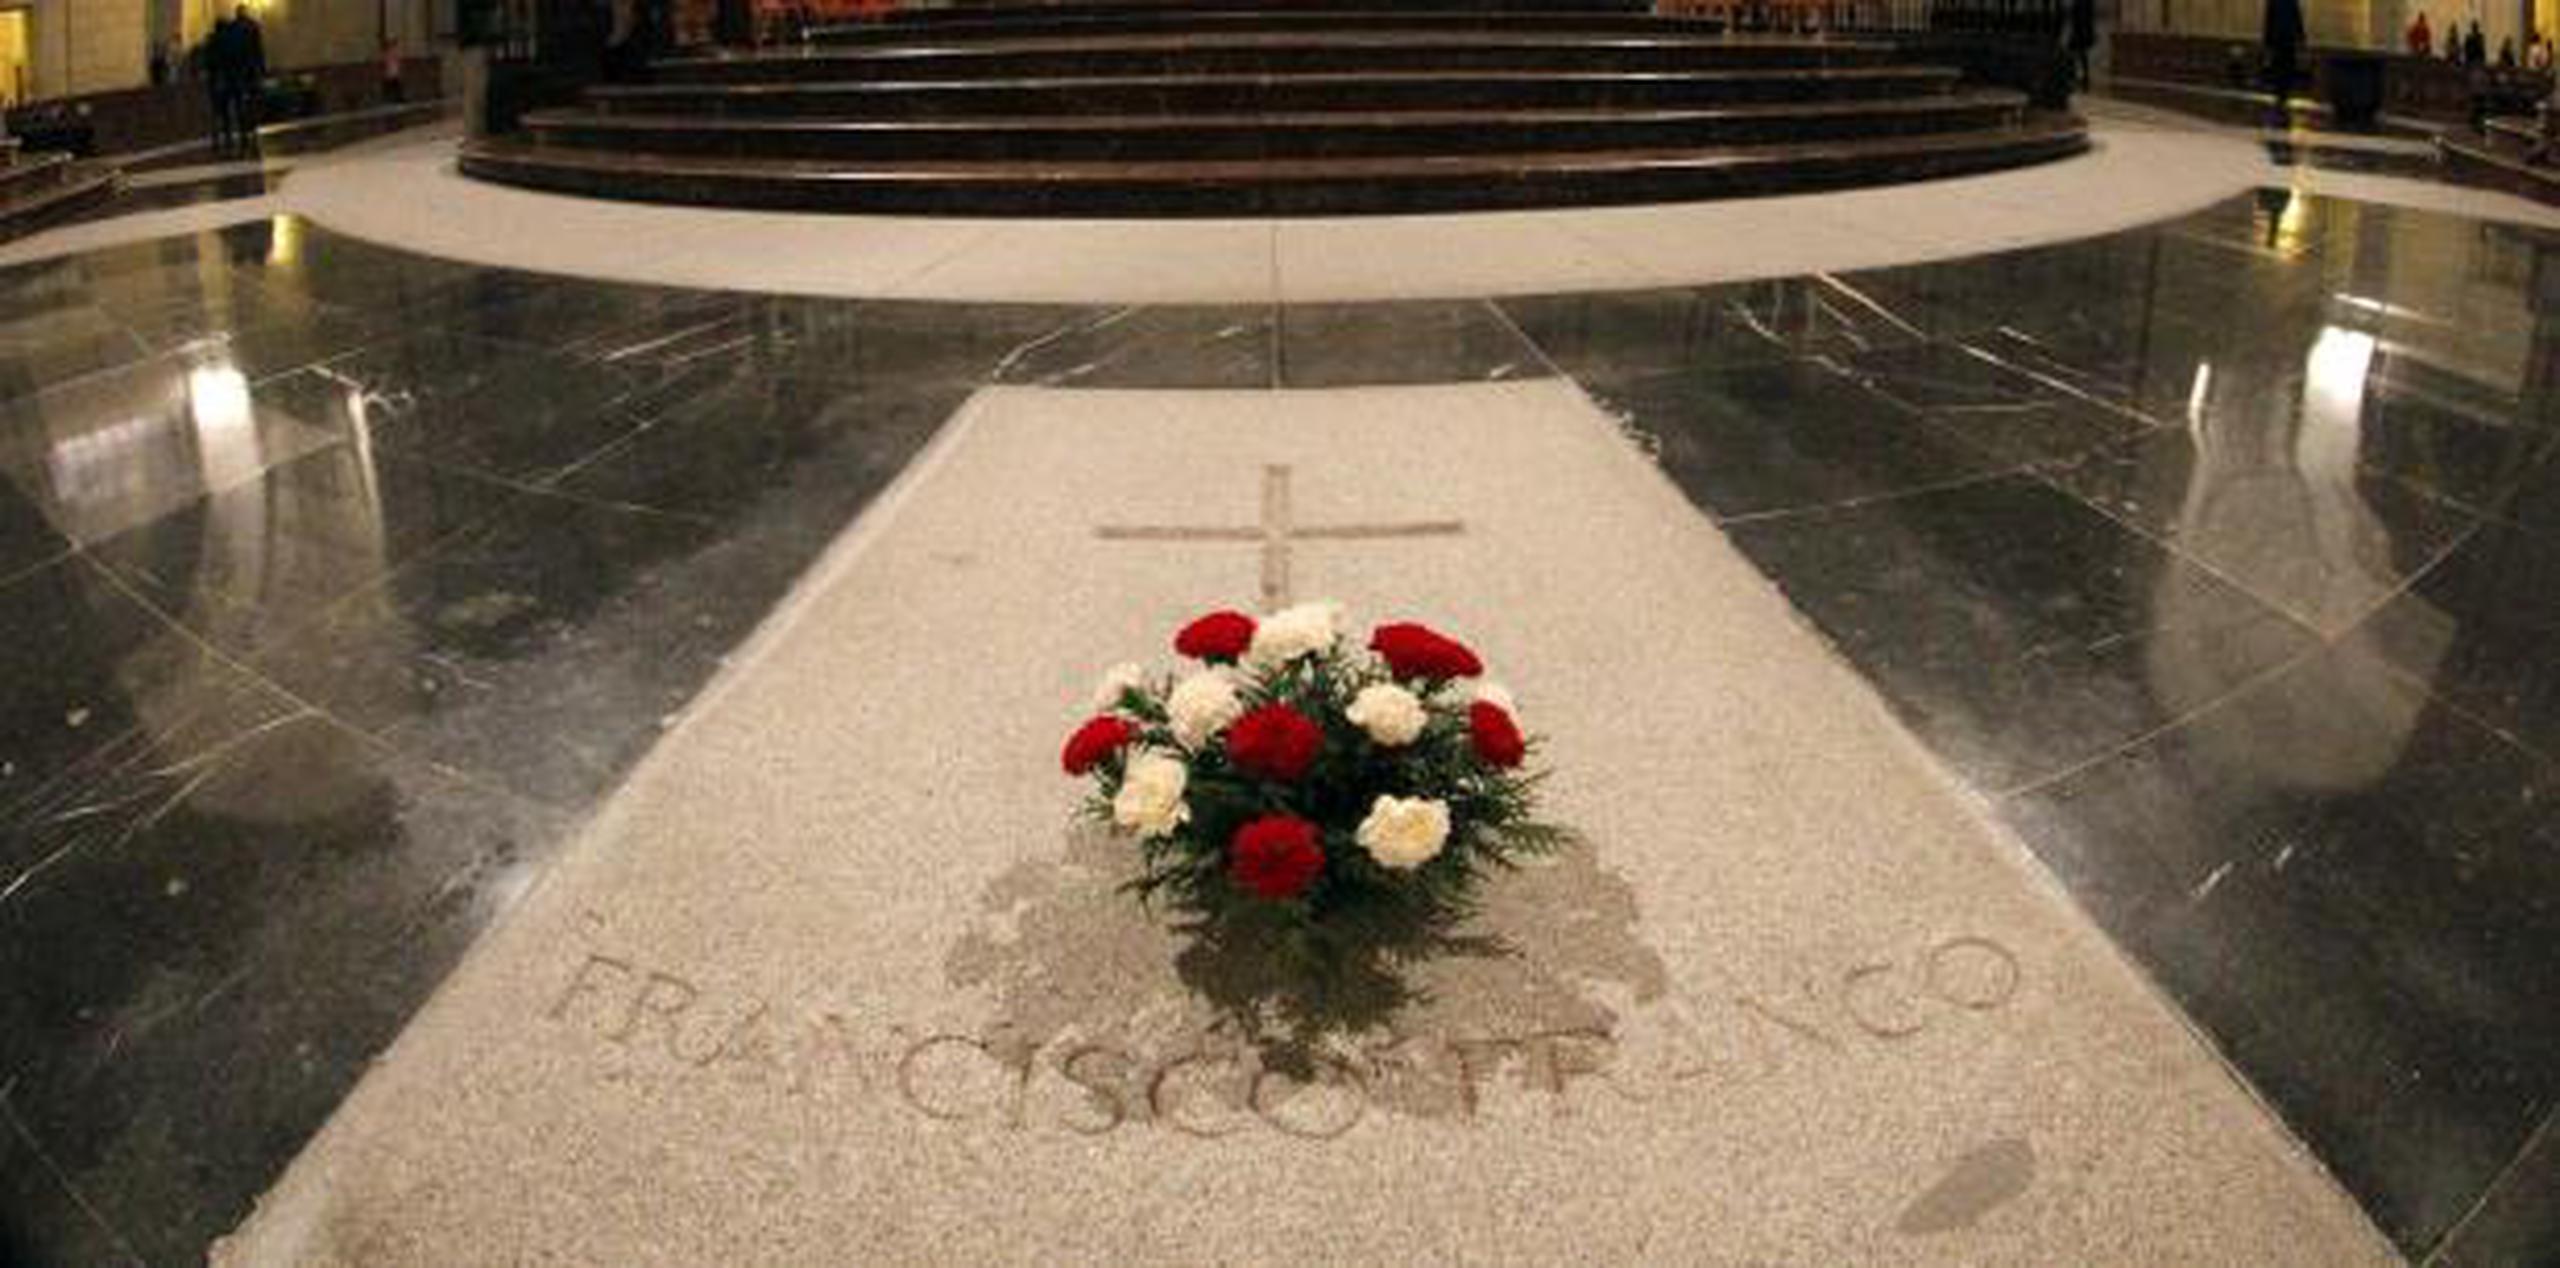 Vista del interior de la basílica del Valle de los Caídos, lugar donde está enterrado el dictador Francisco Franco. (Archivo)